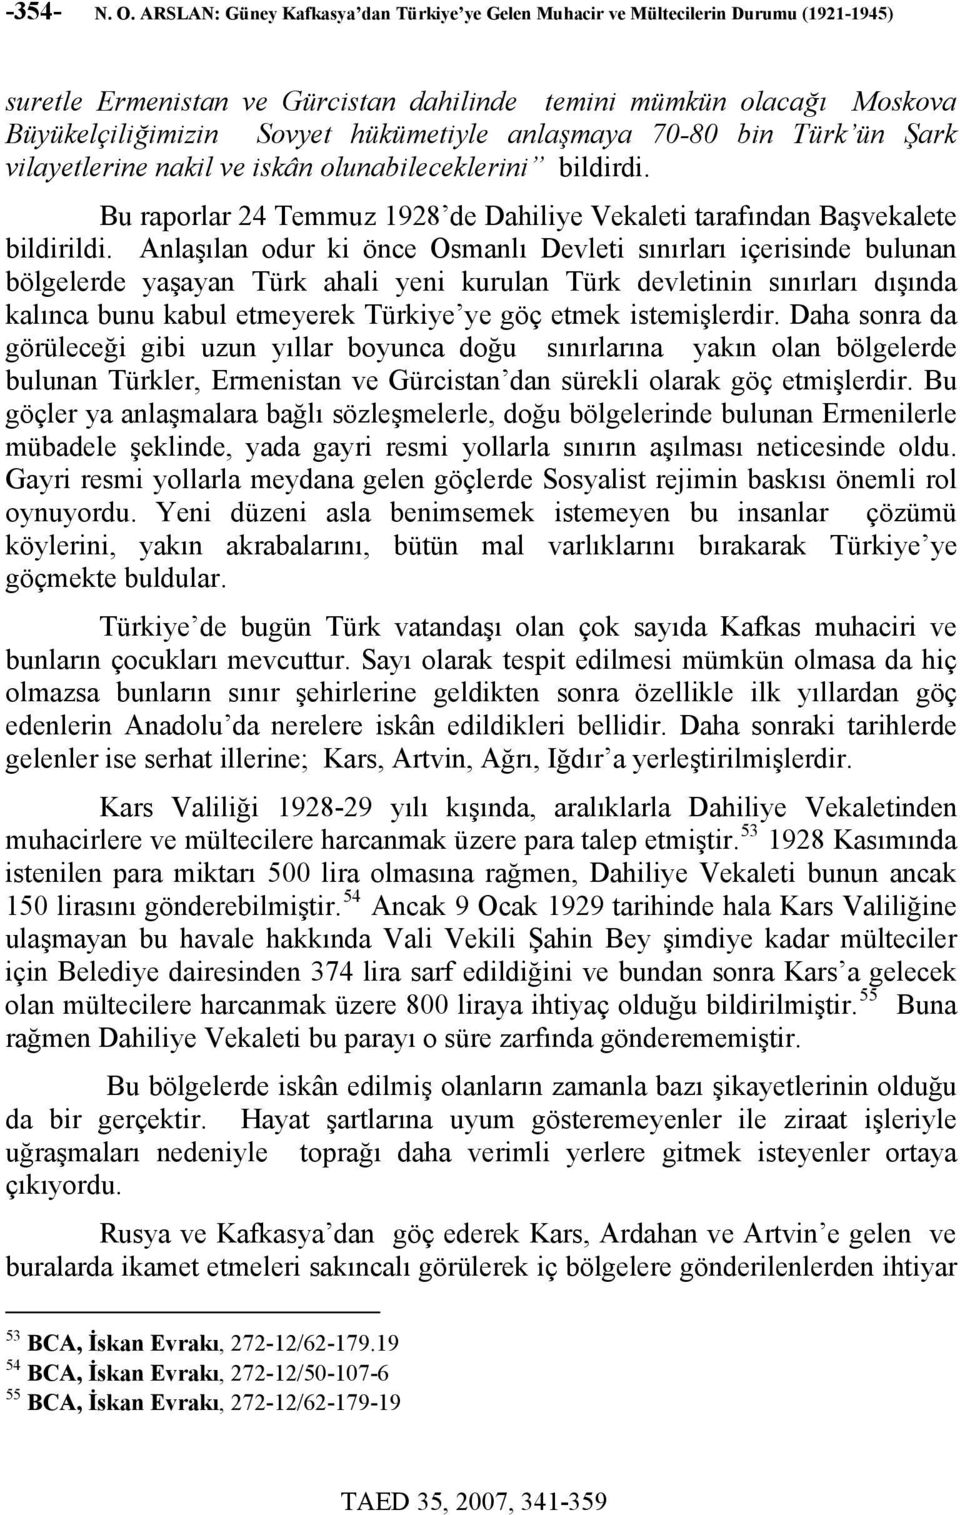 anlaşmaya 70-80 bin Türk ün Şark vilayetlerine nakil ve iskân olunabileceklerini bildirdi. Bu raporlar 24 Temmuz 1928 de Dahiliye Vekaleti tarafından Başvekalete bildirildi.